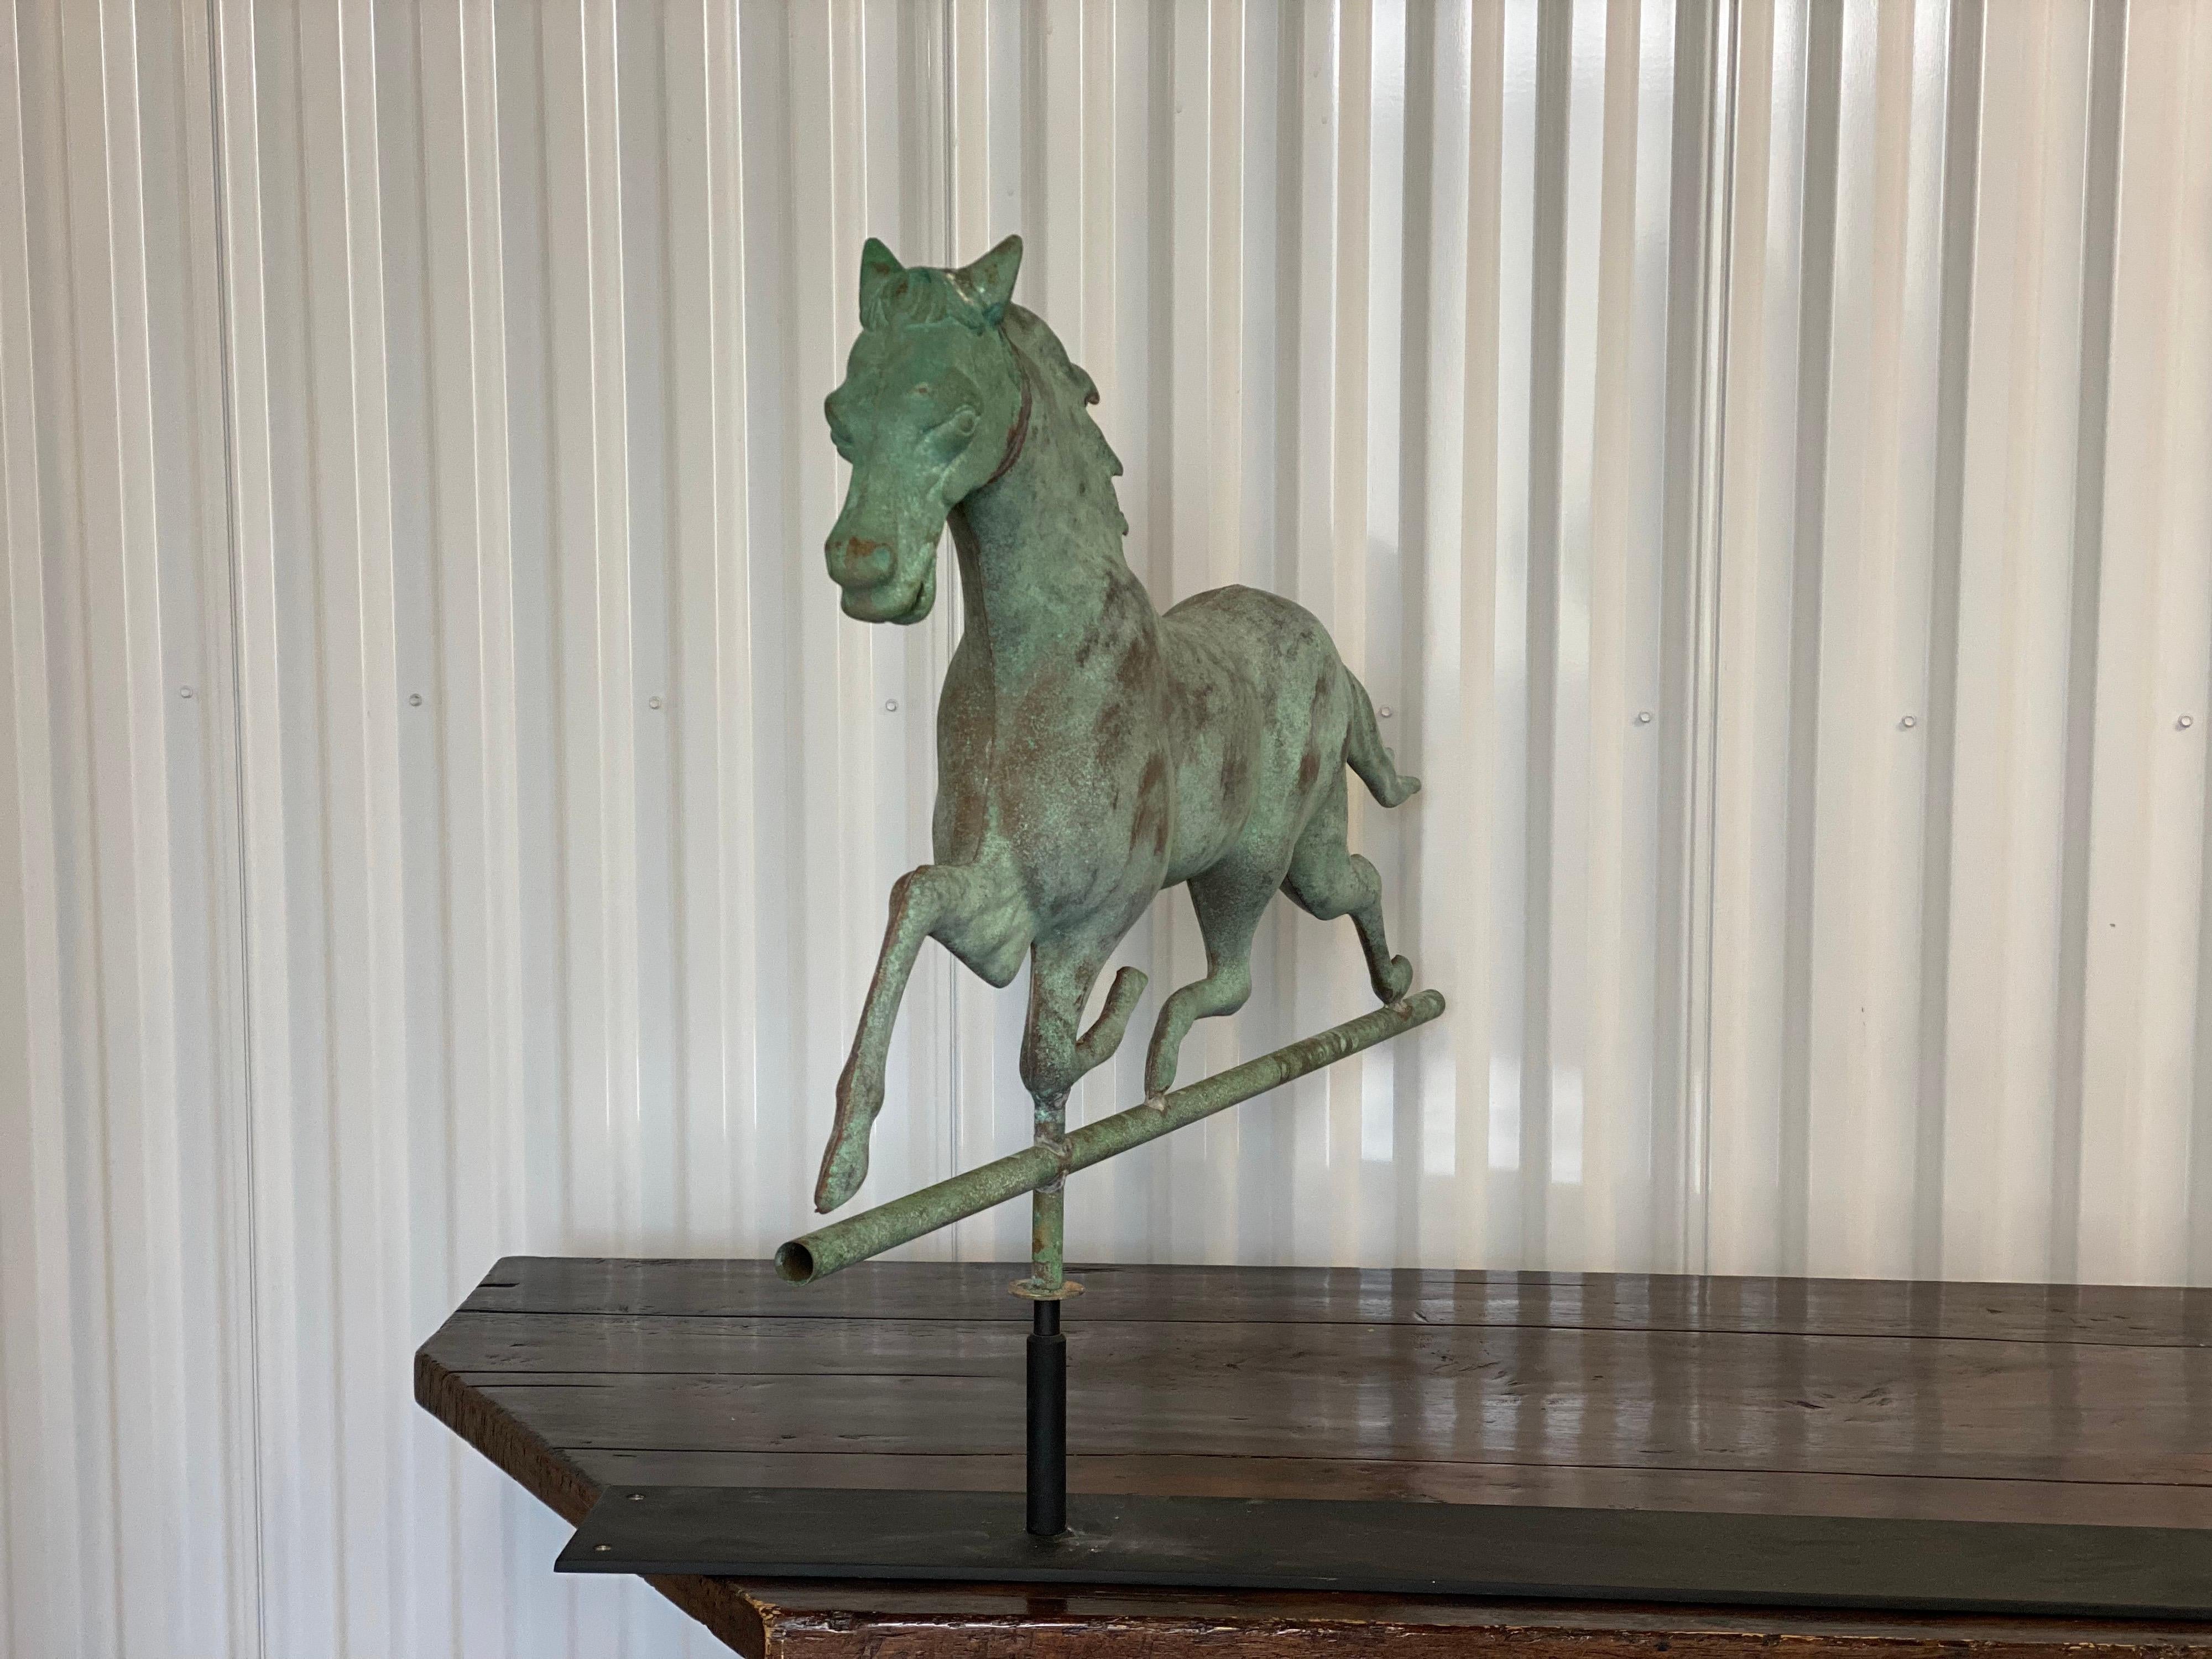 Girouette à cheval en vert verdâtre sur pied, attribuée à Ethan Allen.
Magnifique vase en fer vert-de-gris patiné en forme de cheval courant du 19ème siècle, attribué à Ethan Allen. Sur un support en fer personnalisé.

34